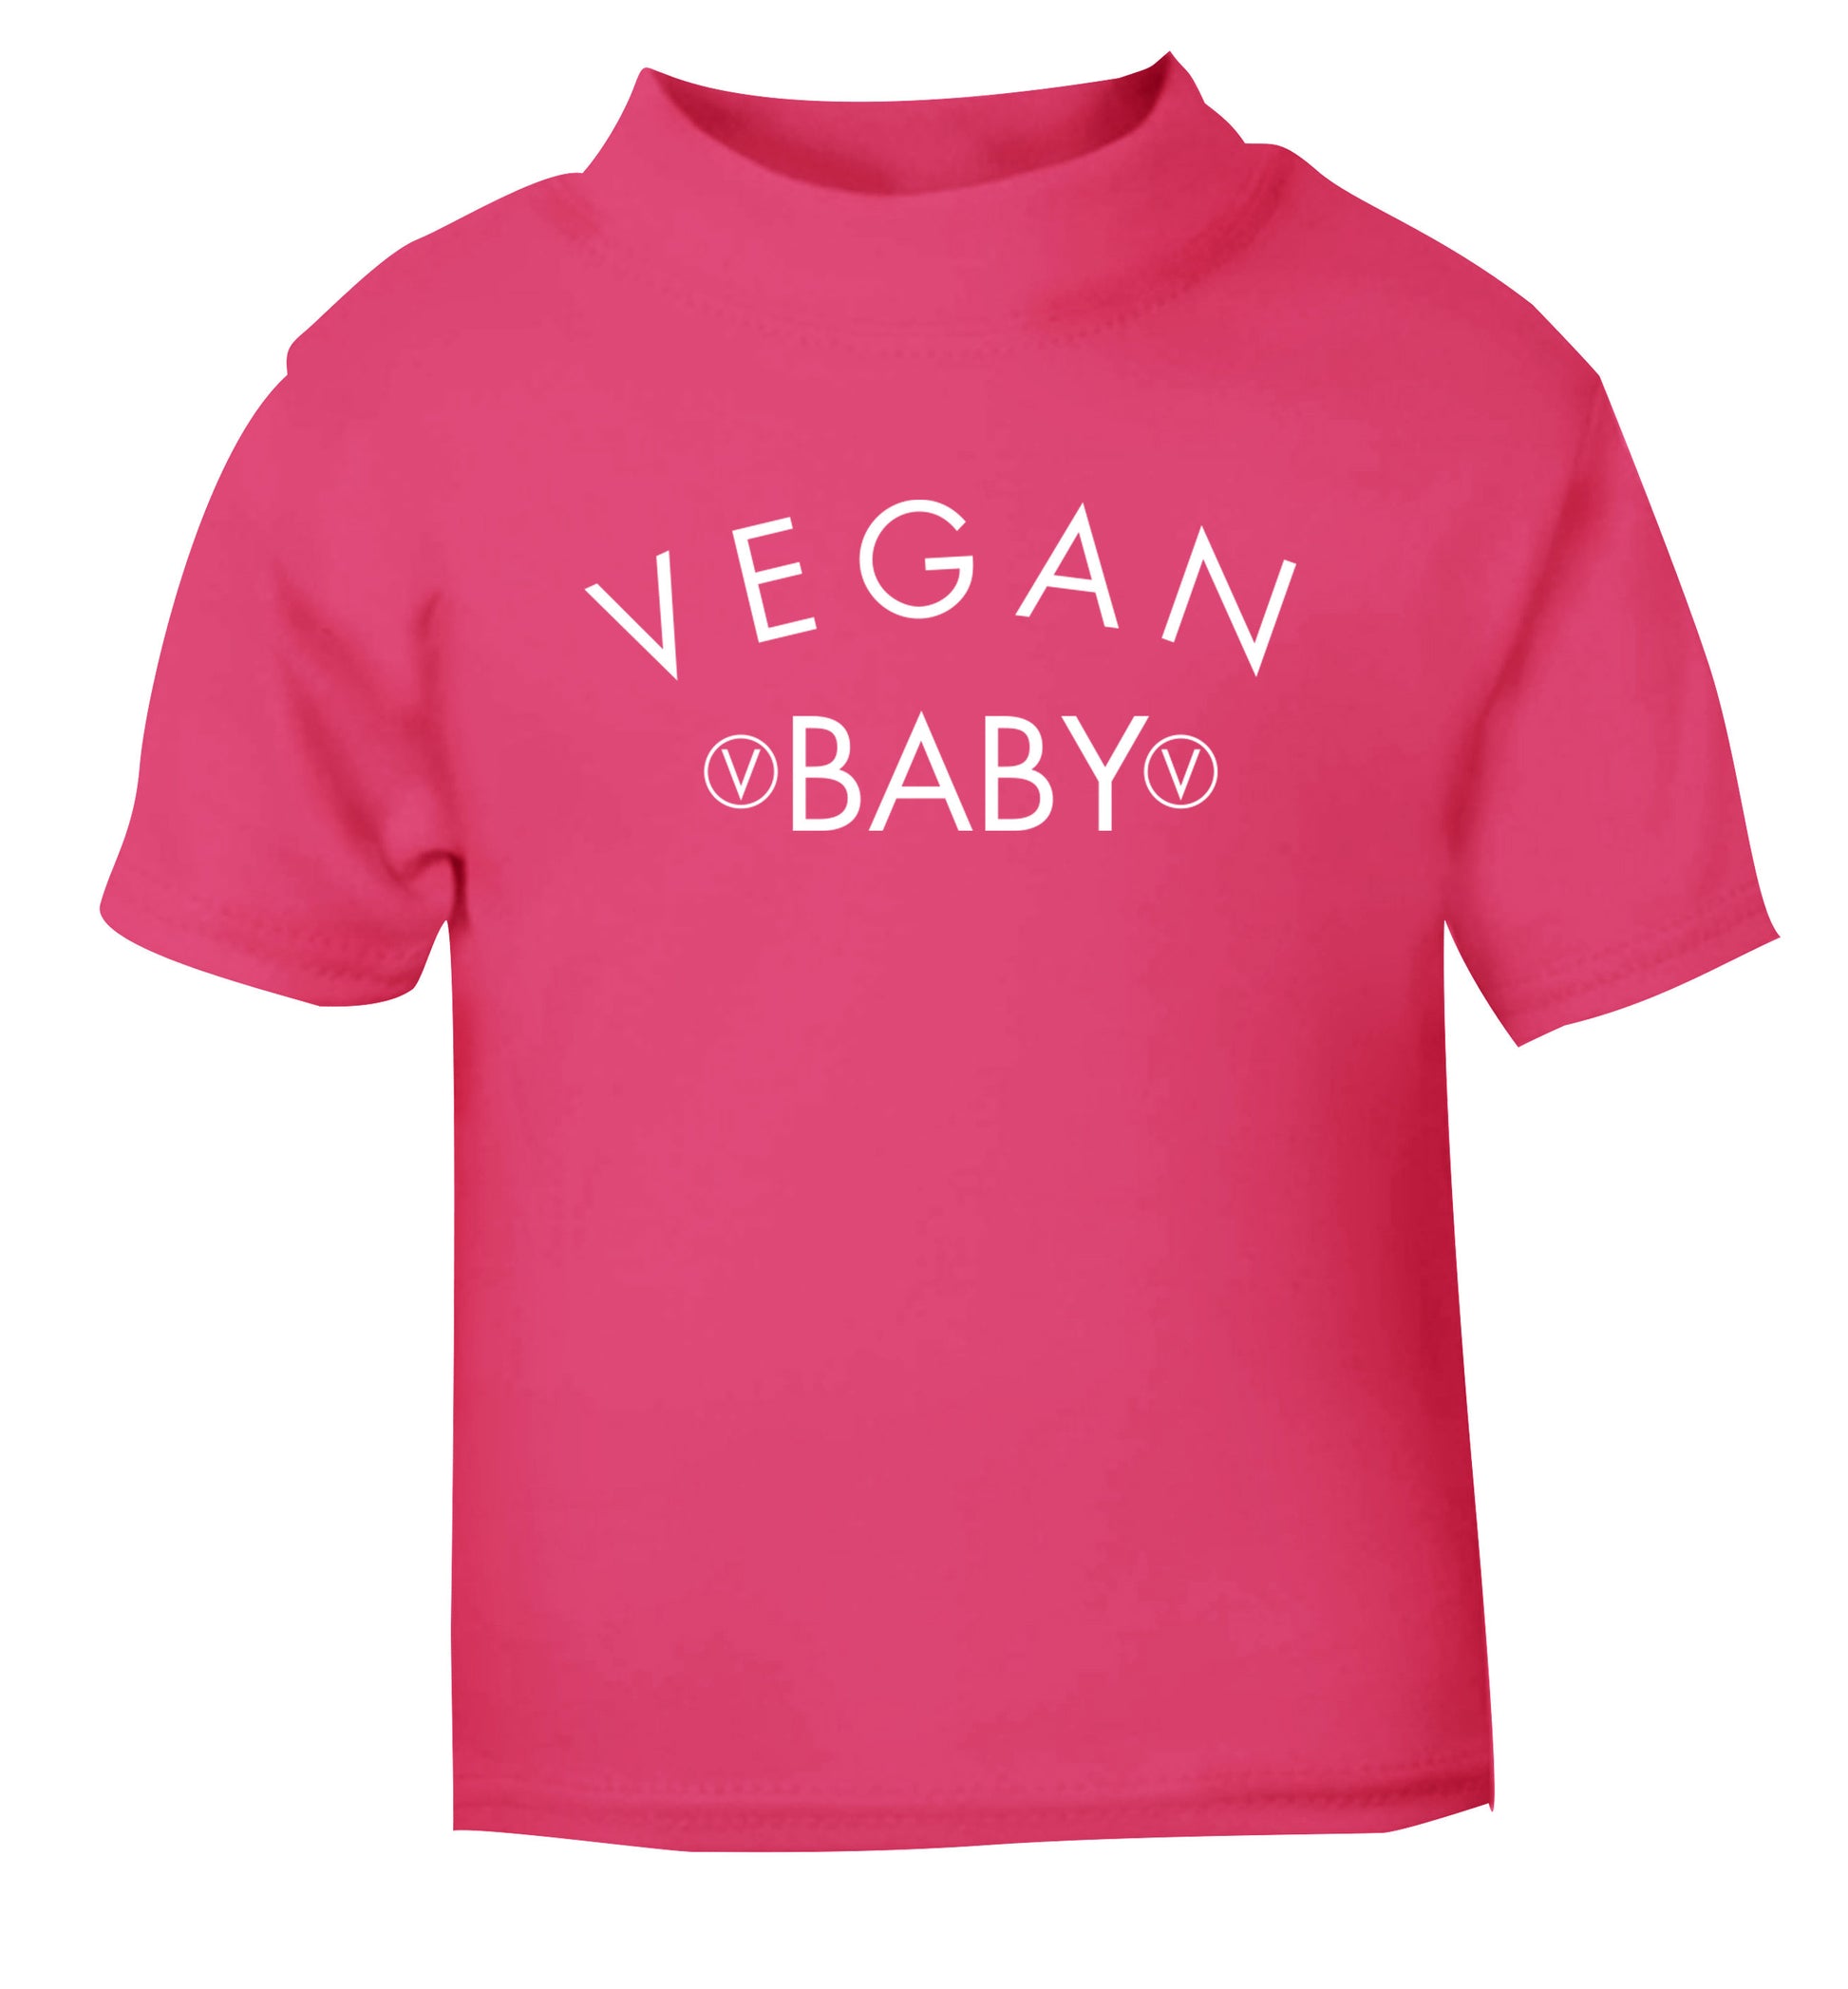 Vegan baby pink Baby Toddler Tshirt 2 Years